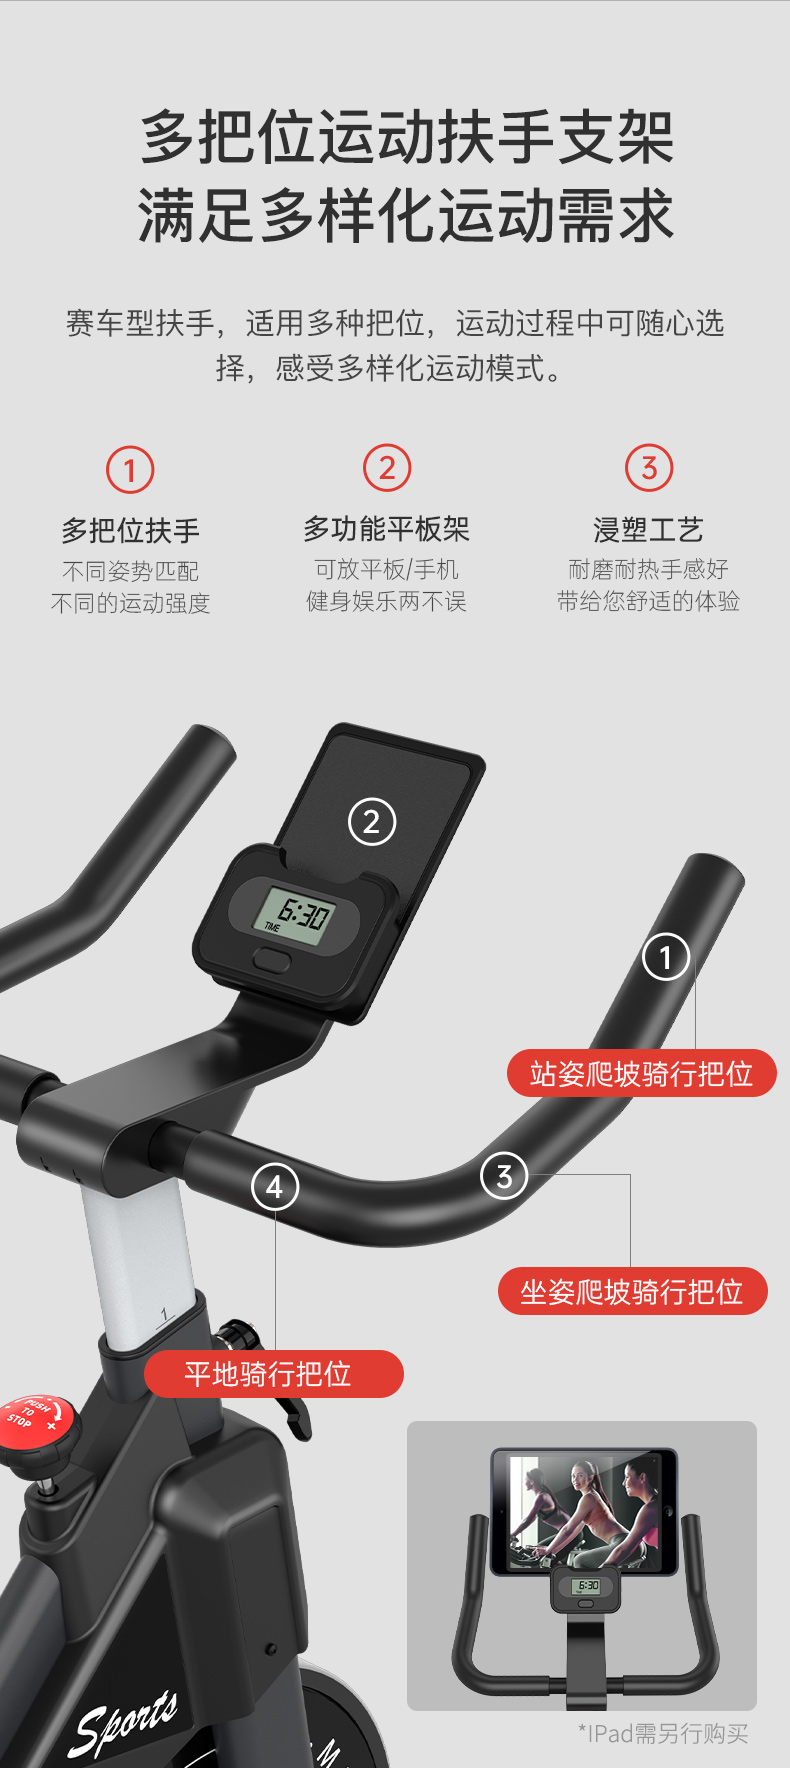 舒体动感单车家用磁控智能健身室内健身器材ST-S30无需插电脚踏自行车(图11)